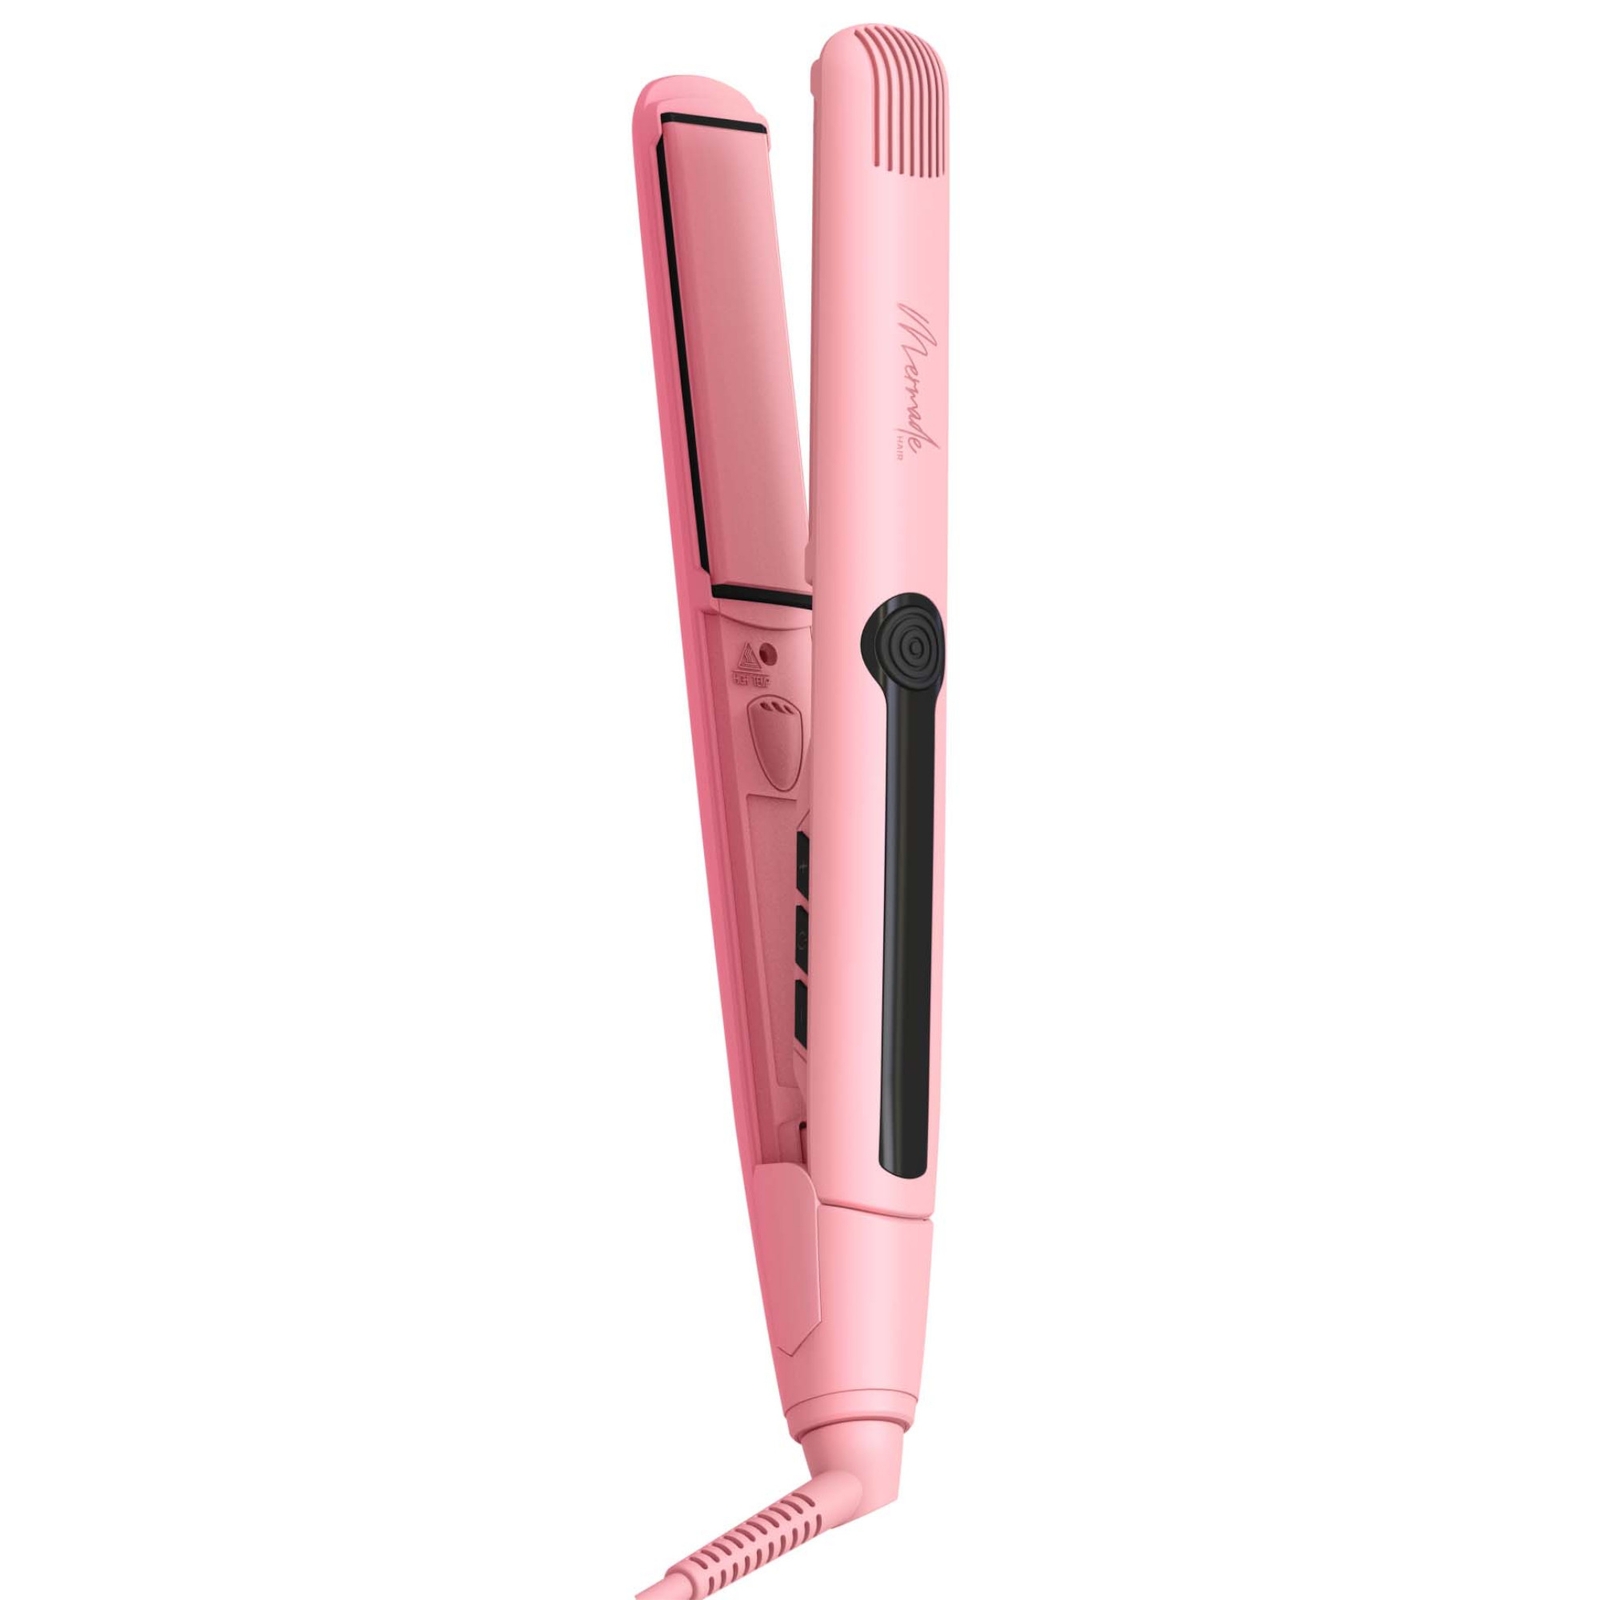 Image of Mermade Hair Straightener - Pink (EU)